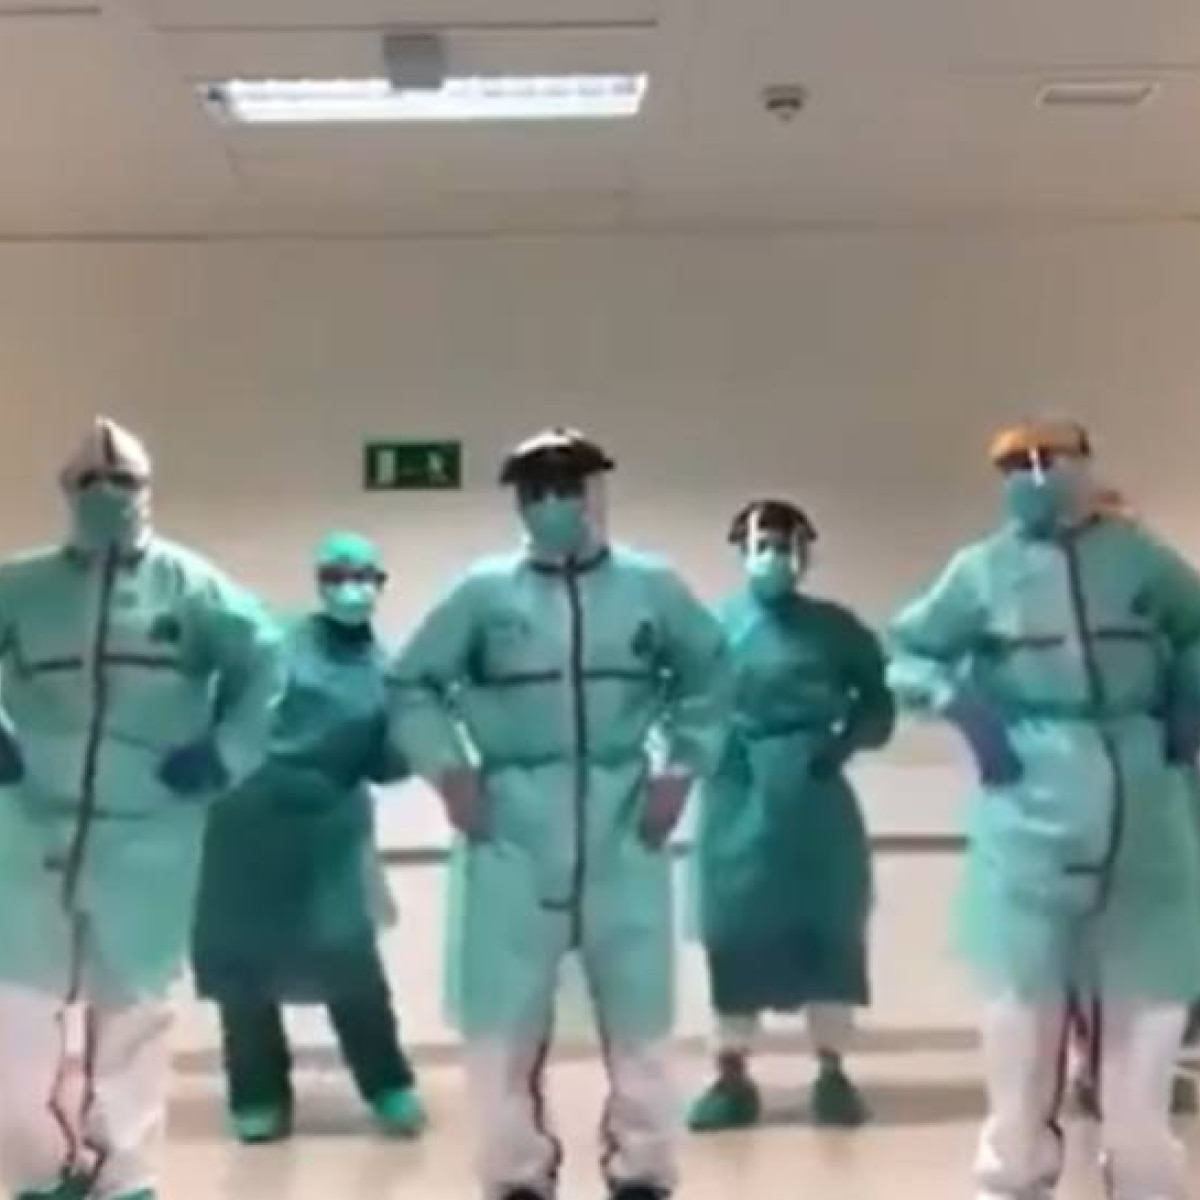 Medicos E Enfermeiros Na Espanha Dancam Musica De Beyonce Em Video Emais Estadao